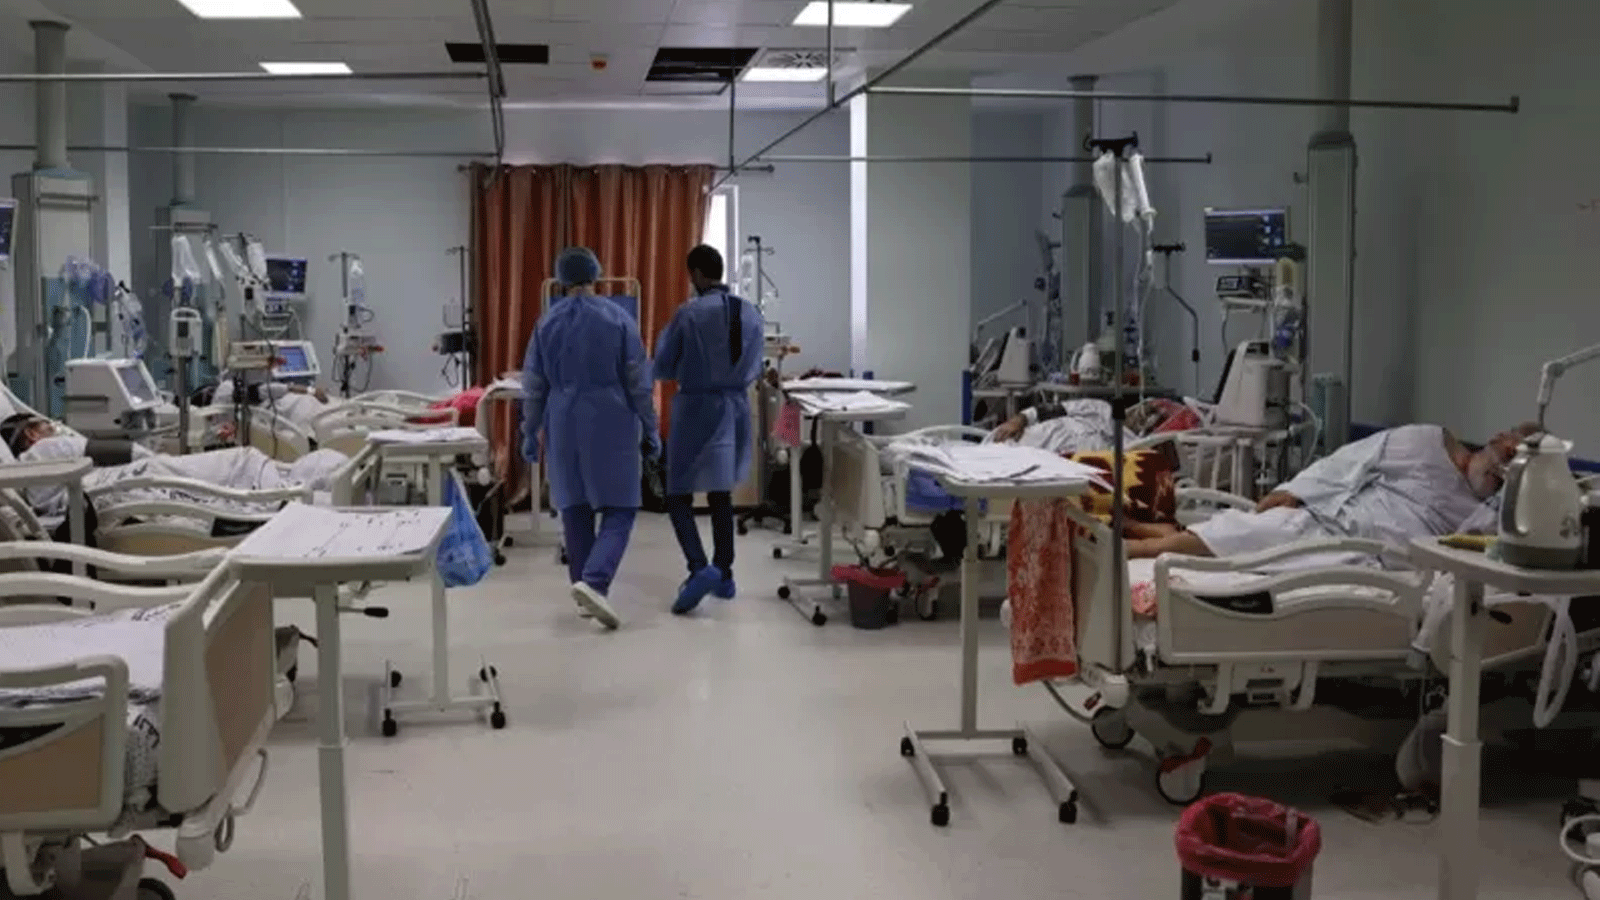 صورة أرشيفية، عام 2021، لمستشفى الصداقة التركي في قطاع غزة والذي كان يقدم خدمات طبية لمرضى السرطان وتوقف عن العمل خلال الأيام الماضية.